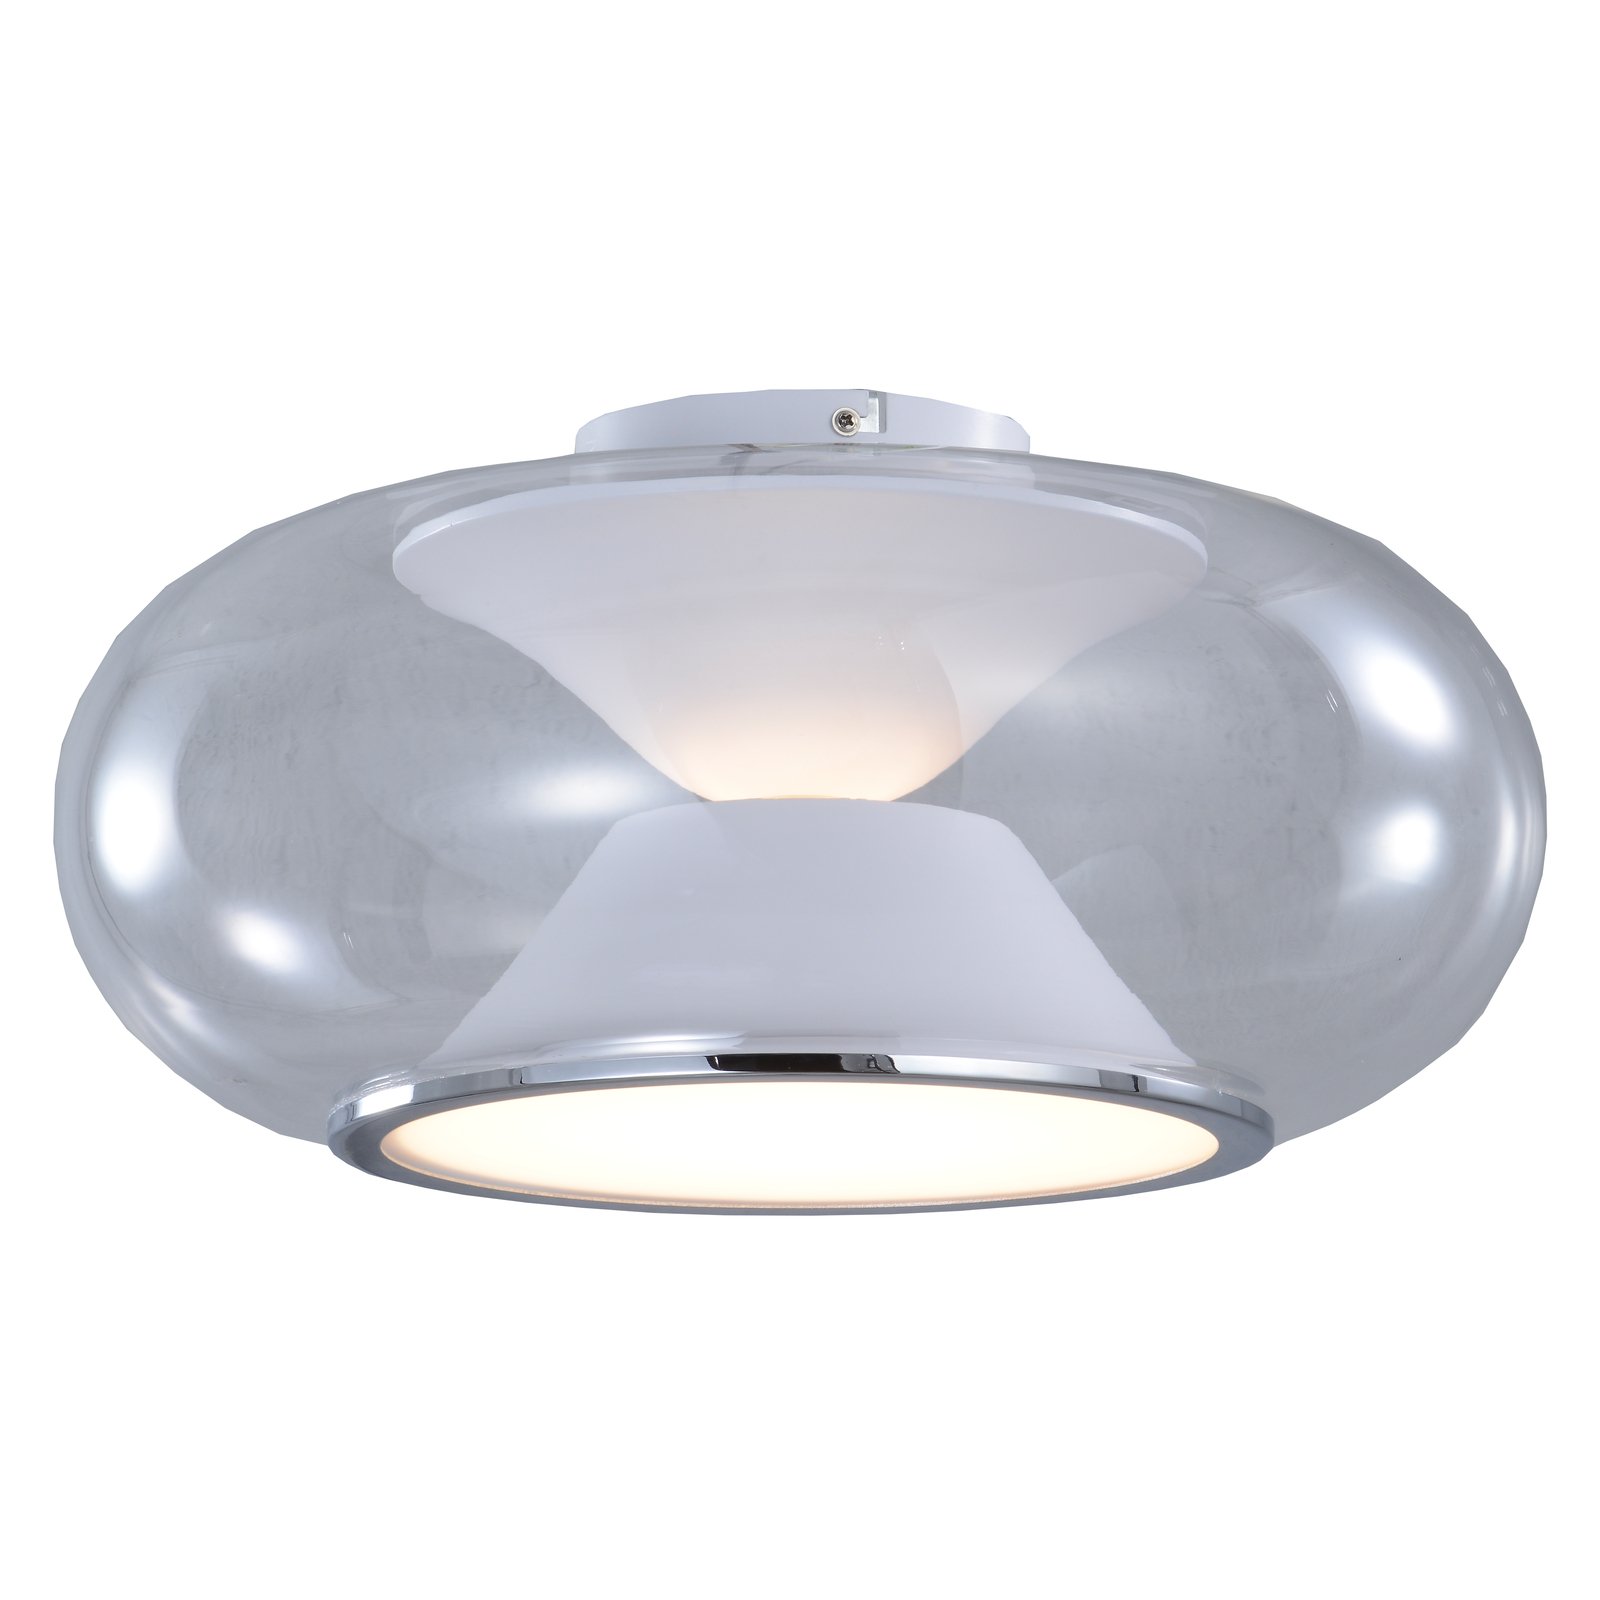 Lucande LED plafondlamp Orasa, glas, wit/helder, Ø 43 cm